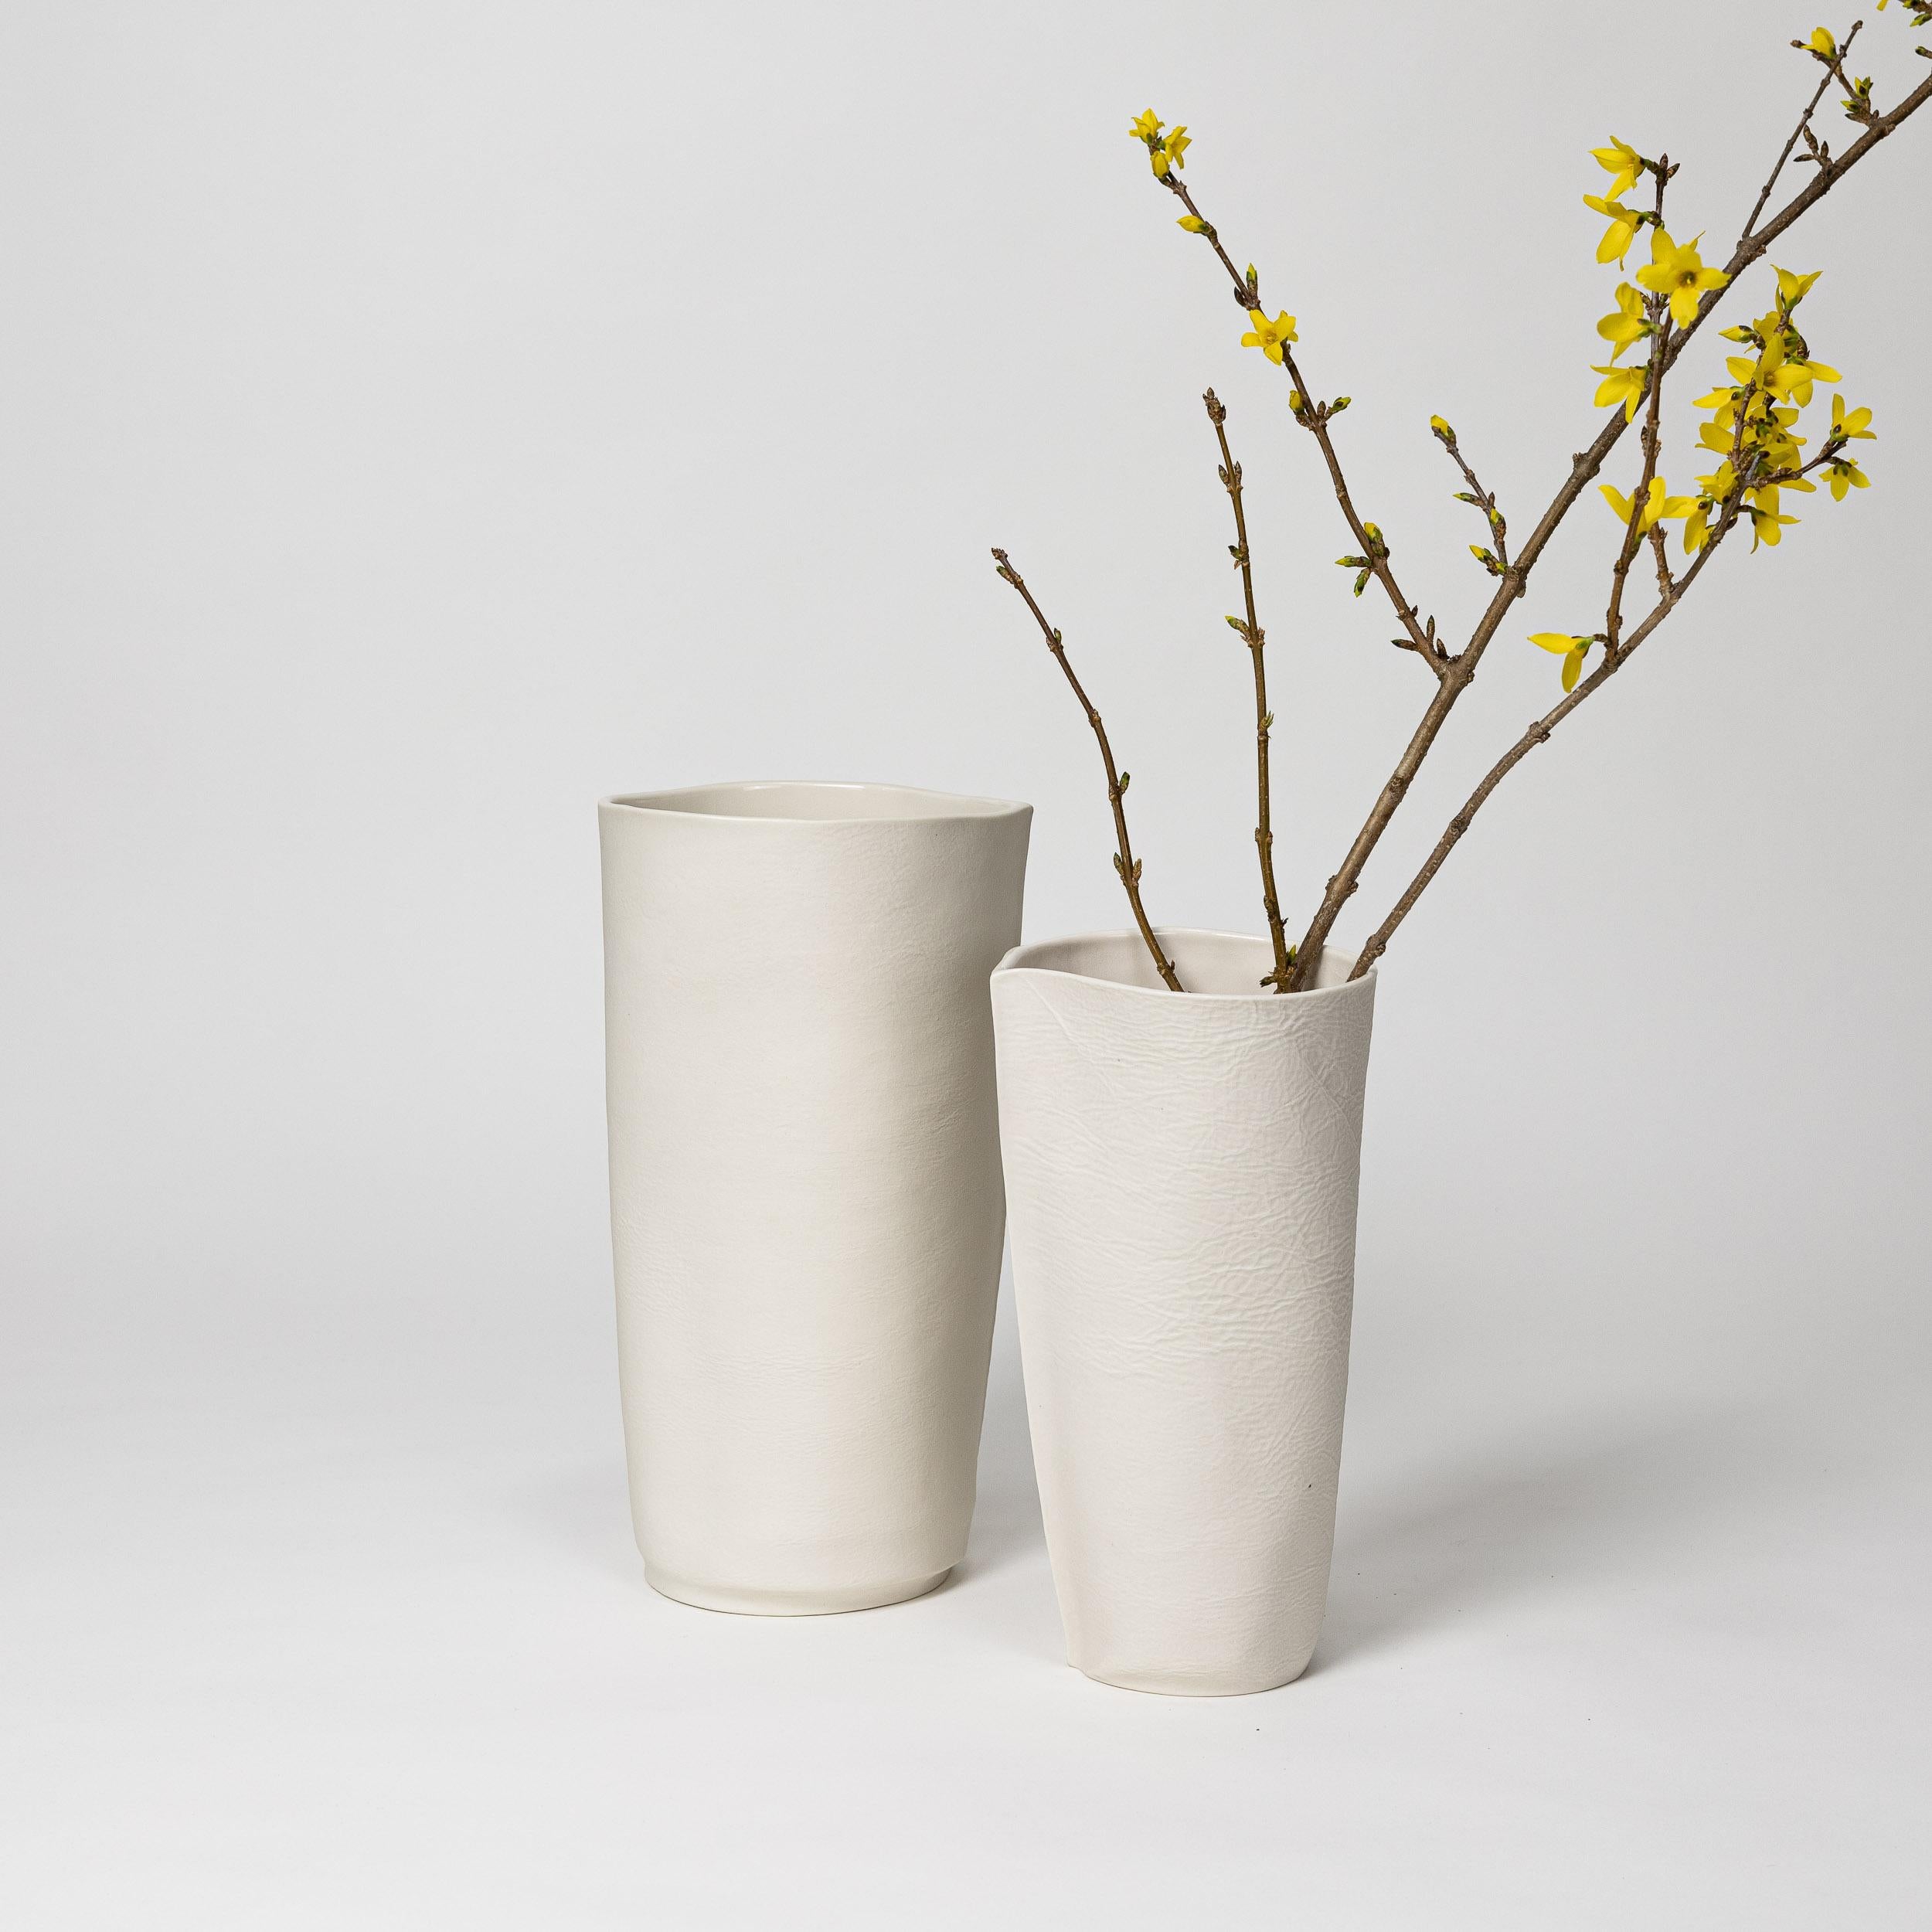 Paar Kawa-Gefäße. 1 x 10 Zoll Höhe und 1 x 12 Zoll Höhe.

Fühlbare und strukturierte Vase aus organischem Porzellan mit glänzender, glasierter Innenfläche. Funktioniert gut als Paar oder einzeln. Ideal für größere Sträuße oder lange